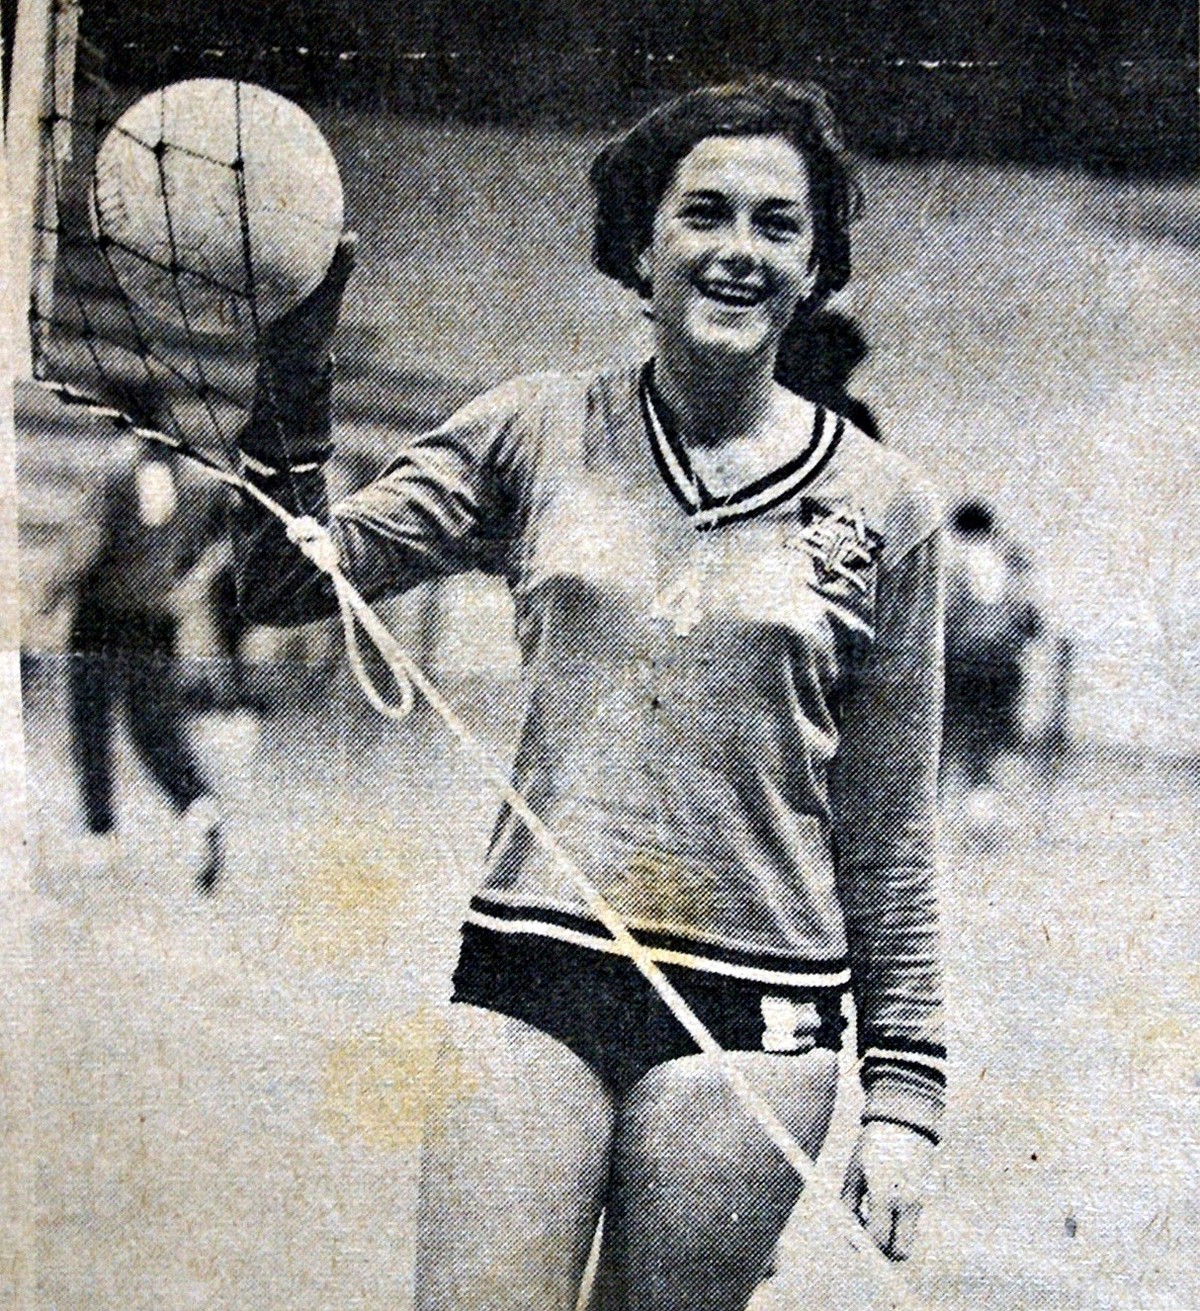 A era de ouro do basquete goiano ocorreu na década de 1970 - Jornal Opção